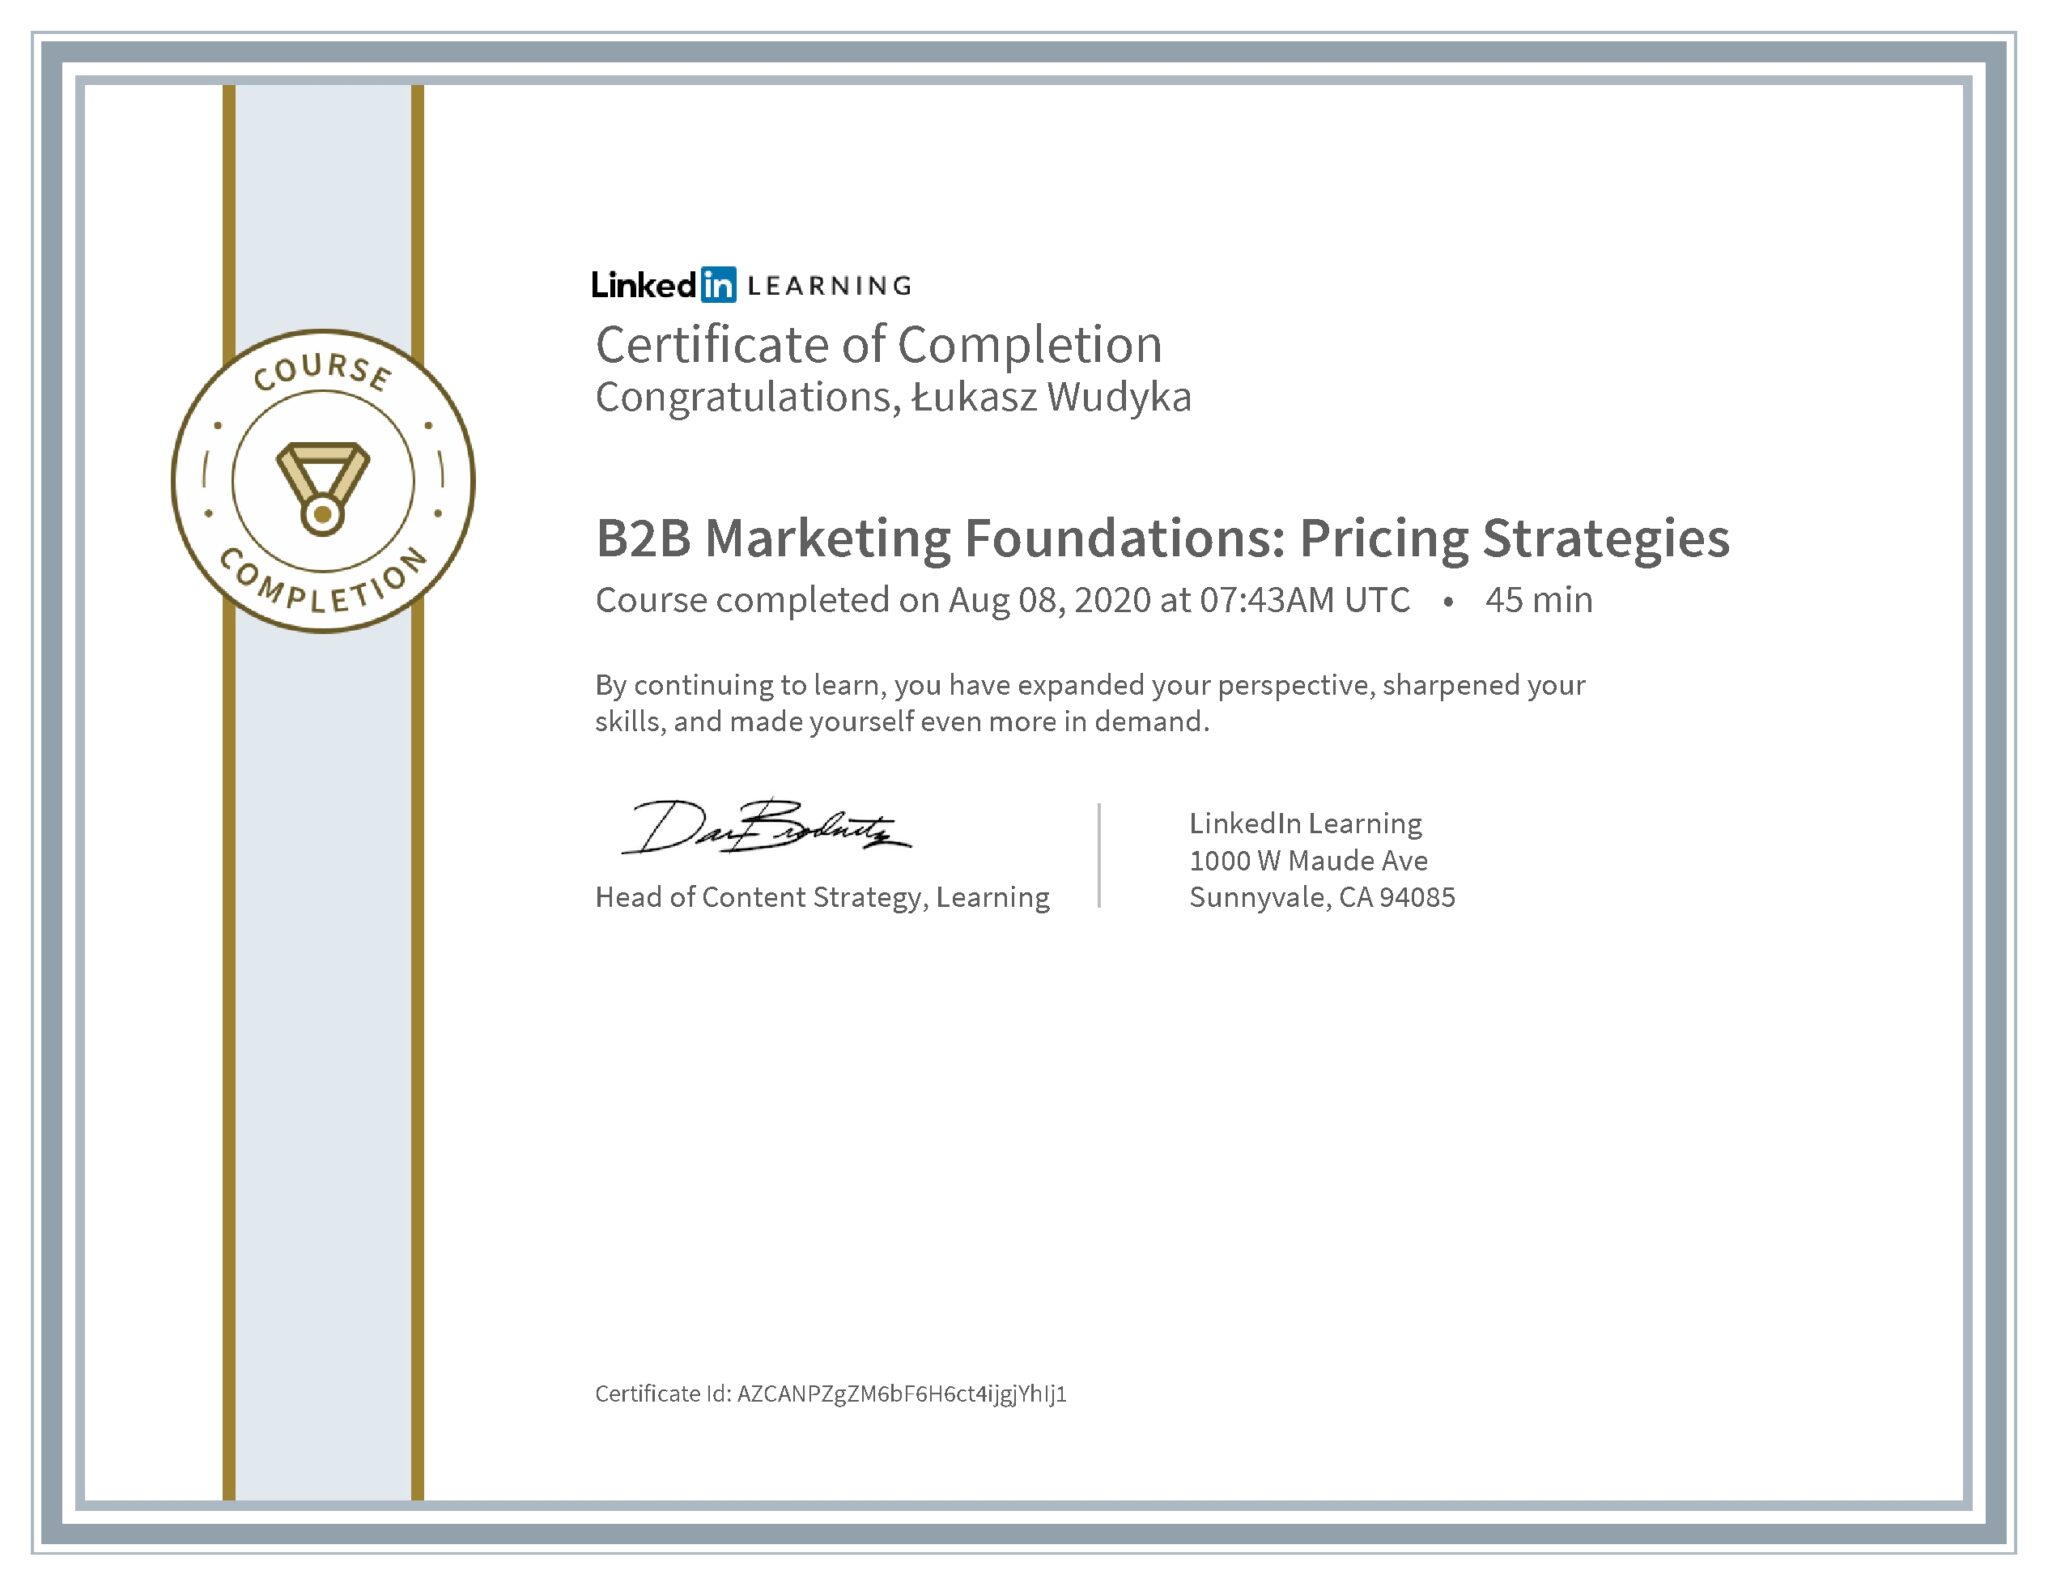 Łukasz Wudyka certyfikat LinkedIn B2B Marketing Foundations: Pricing Strategies